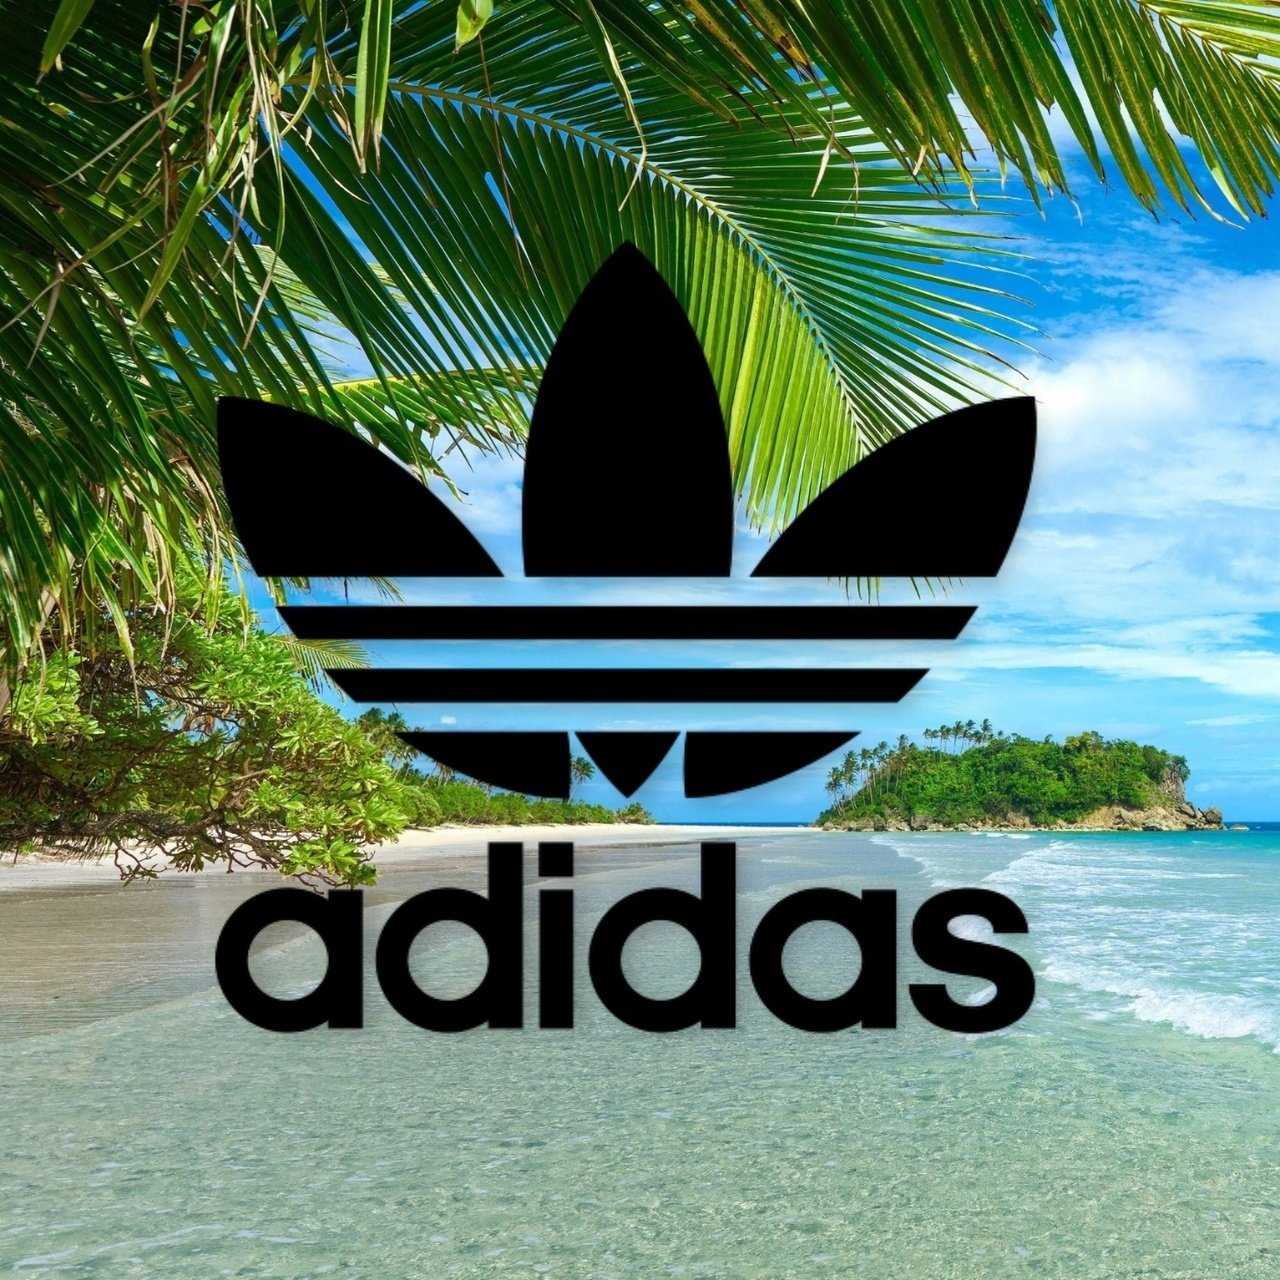 Фотография адидас. Адидас. Adidas логотип. Обои адидас. Adidas новый логотип.